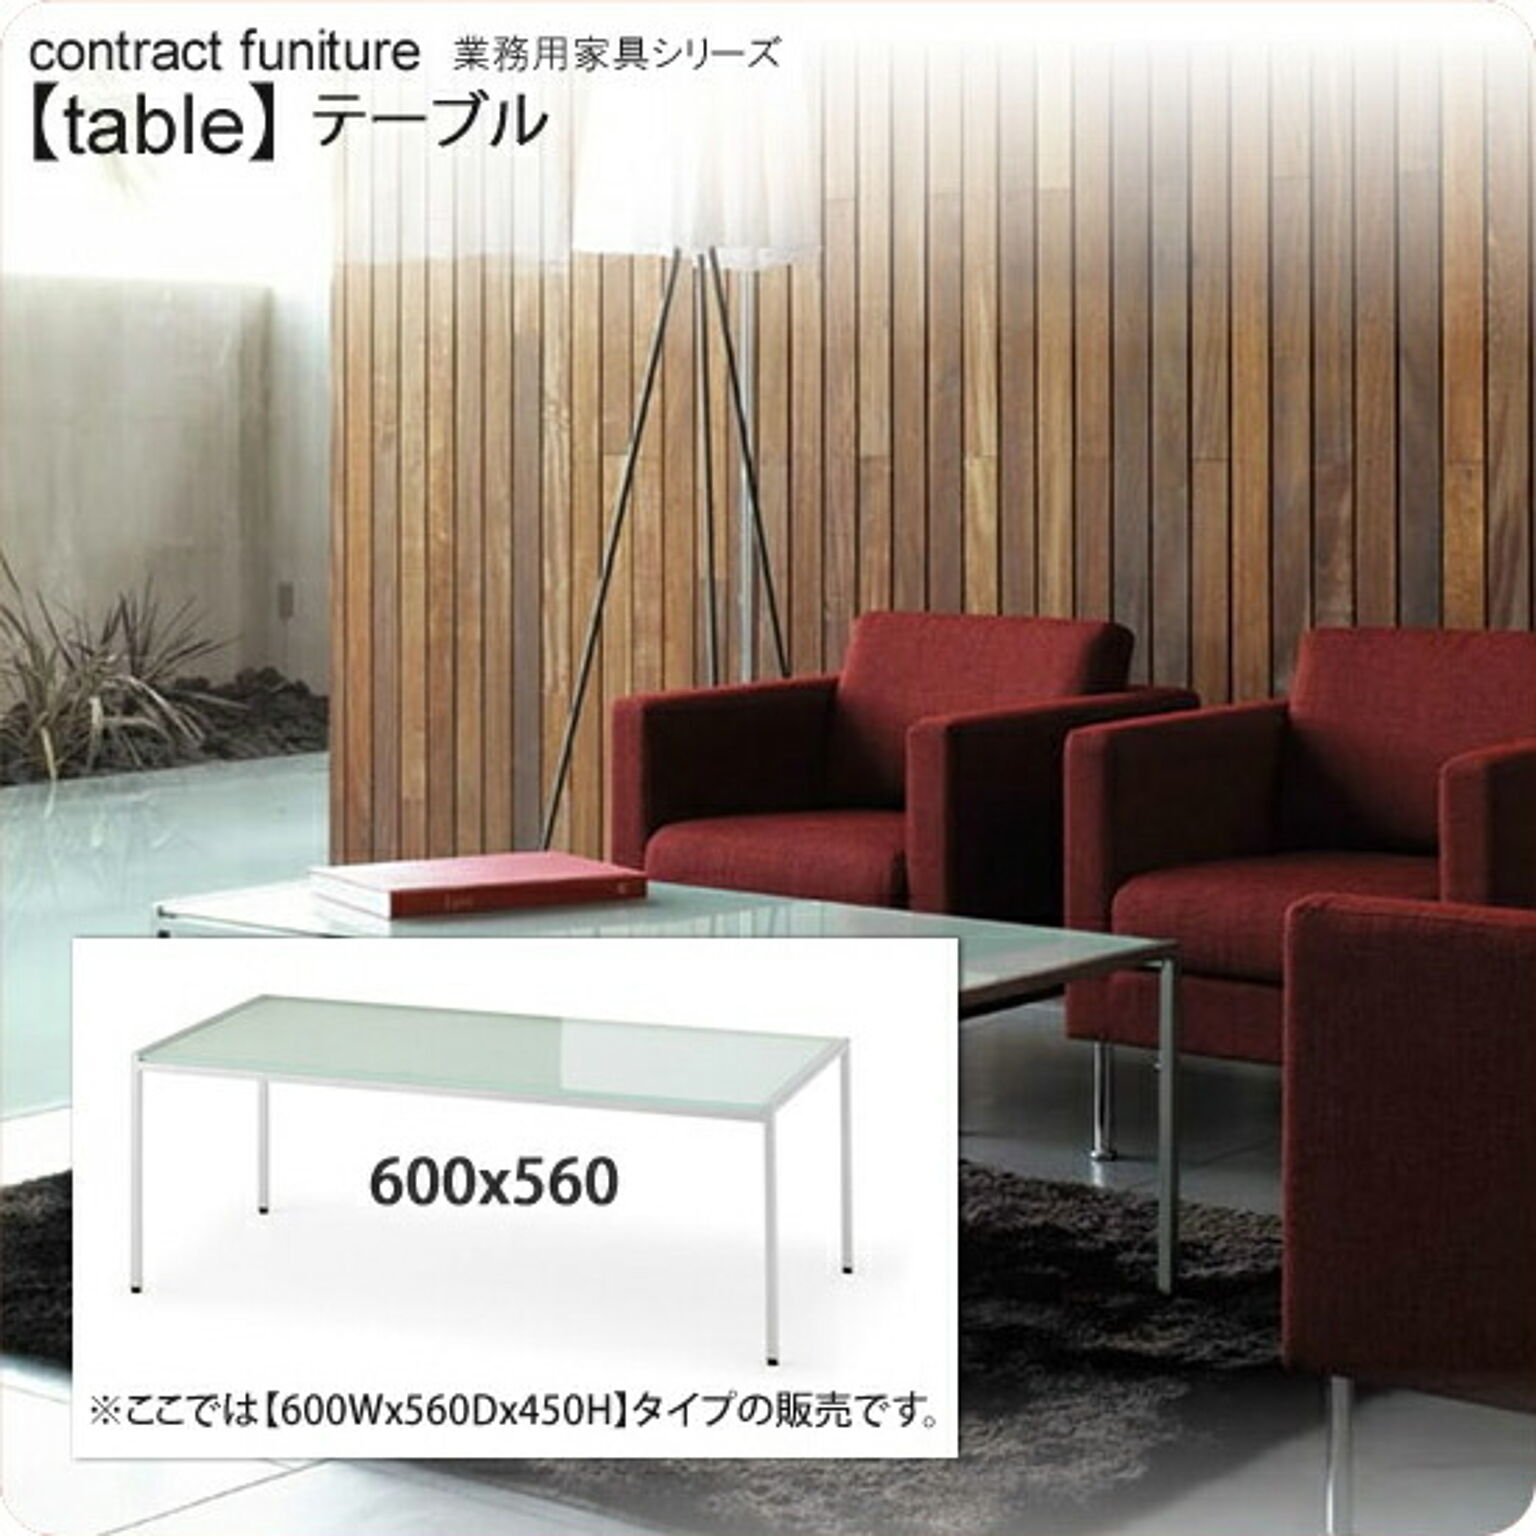 ラウンジテーブル 600x560x450 ラウンジテーブル 業務用家具：tableシリーズ★ フロスト仕上げ強化ガラス 天厚10mm